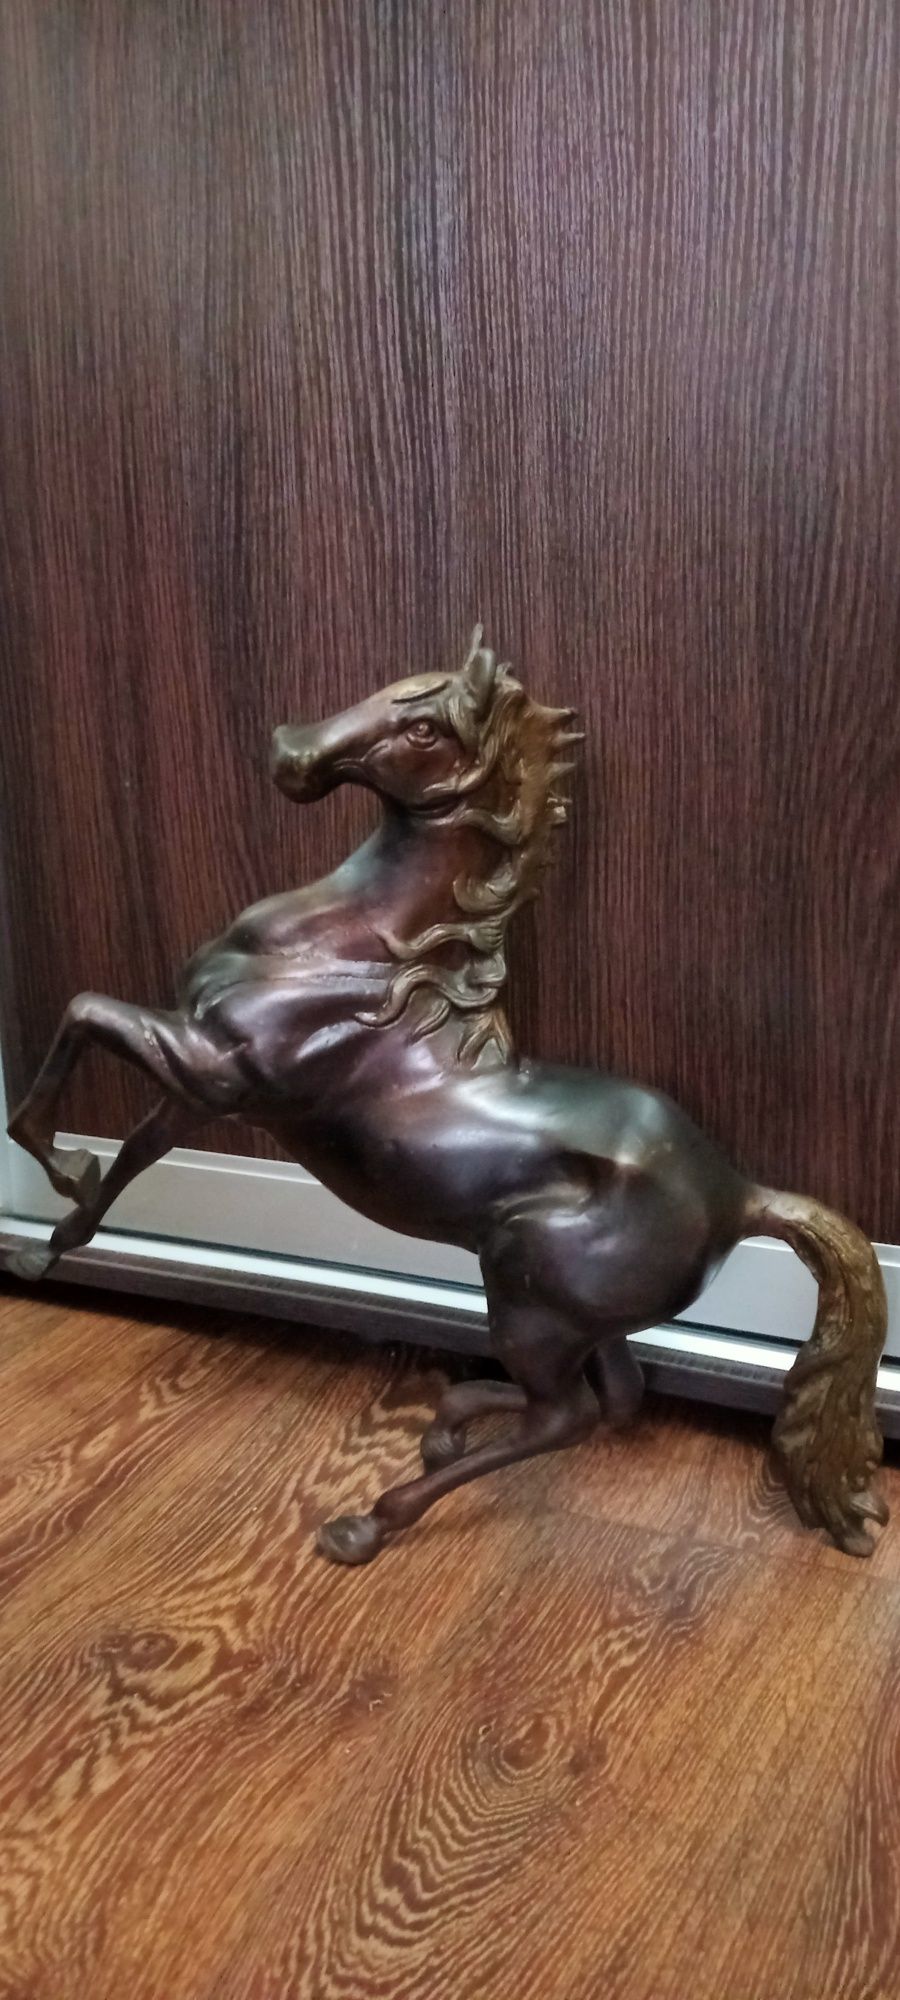 Бронзовая скульптура лошадь